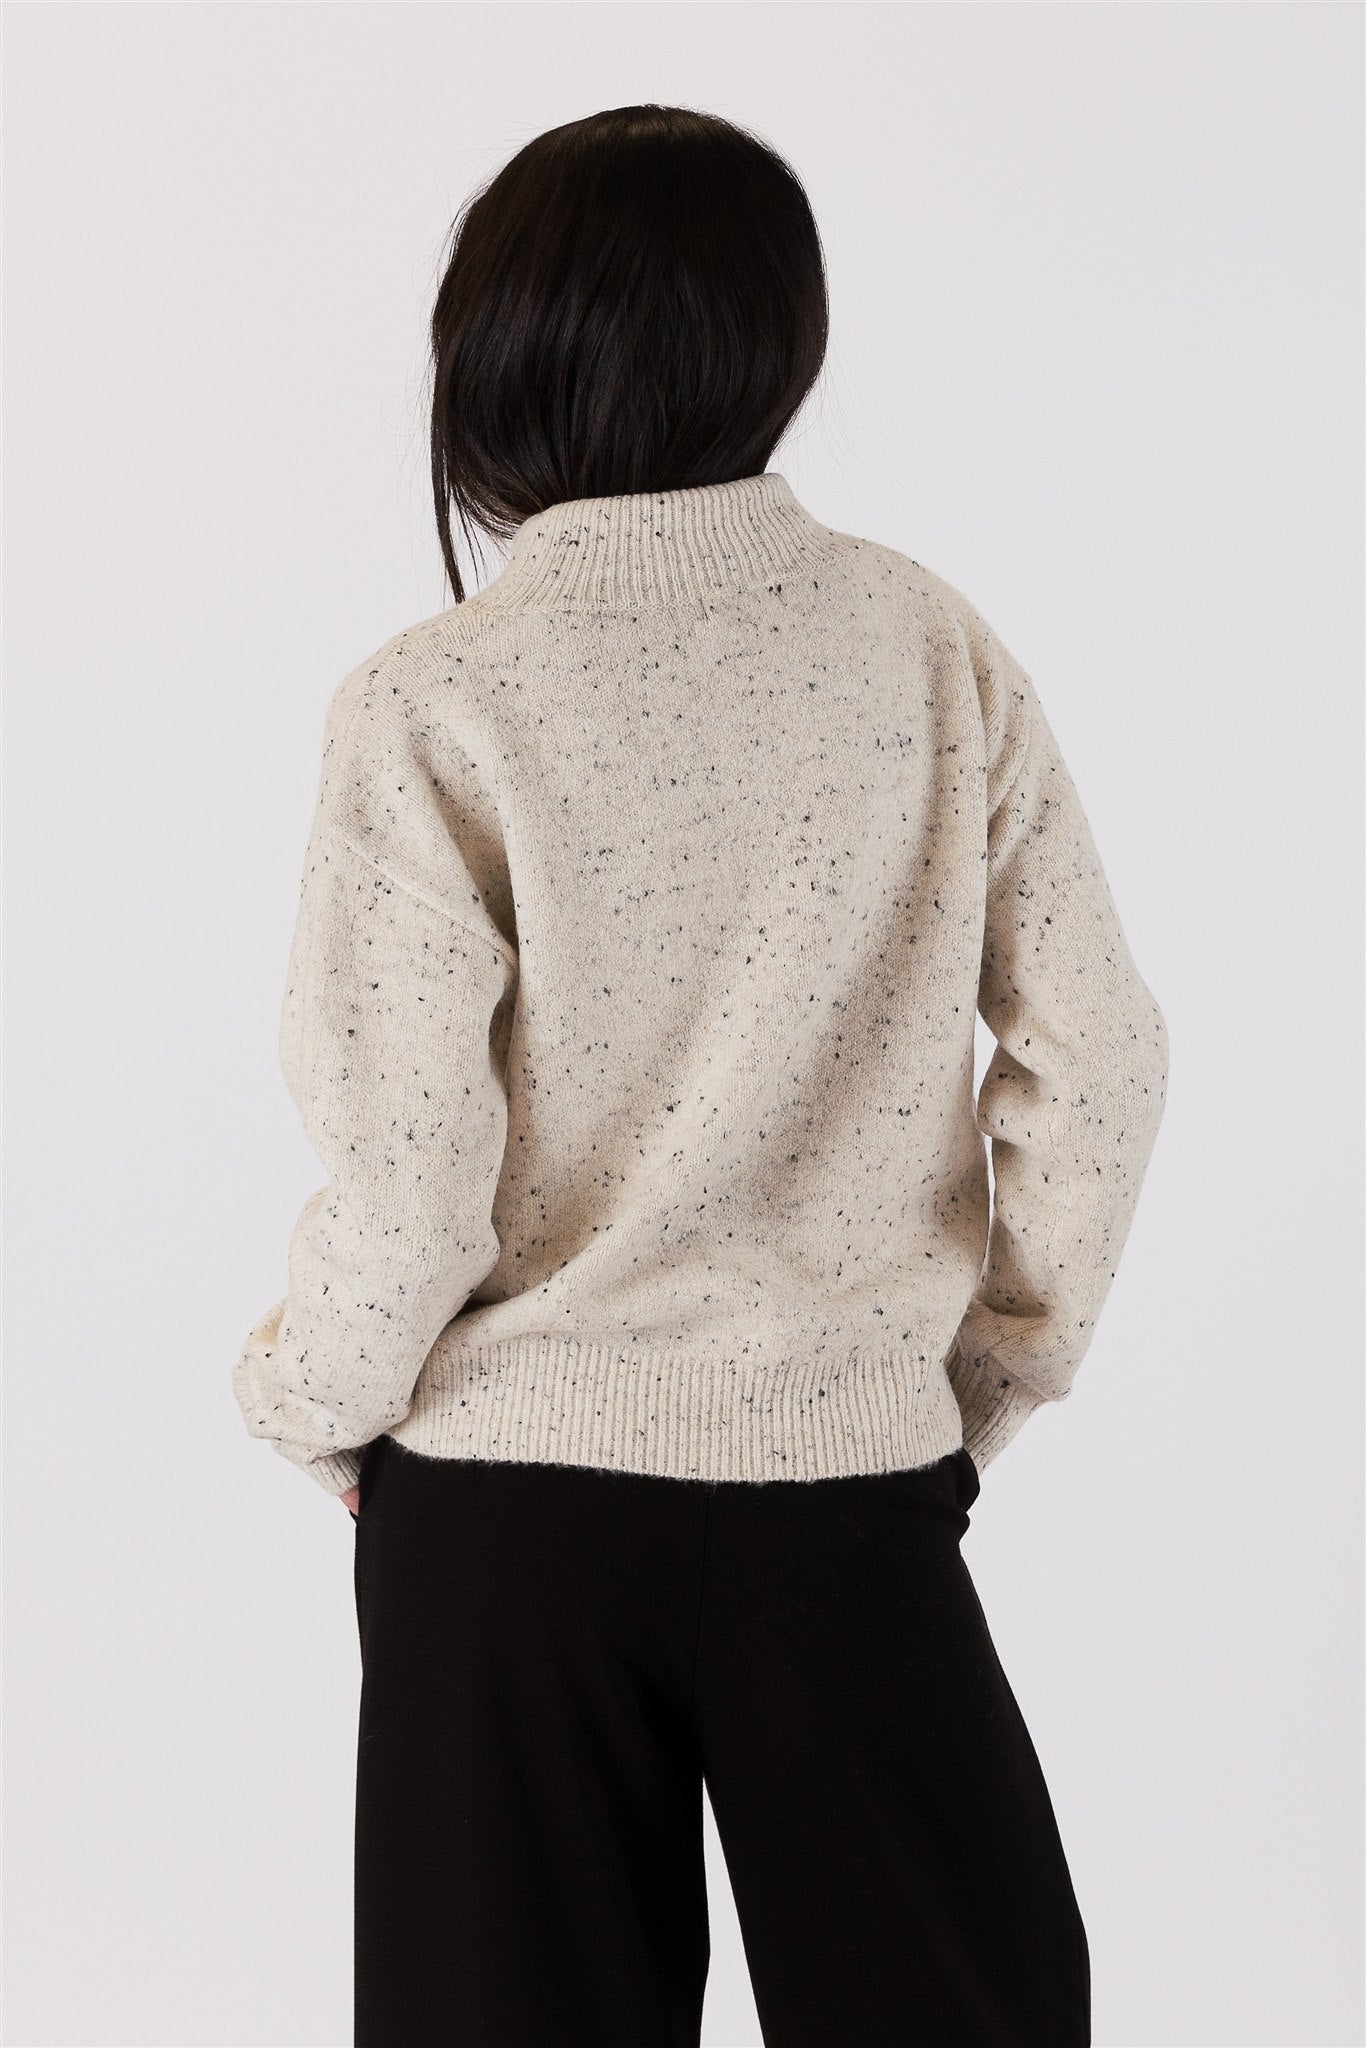 Lyla+Luxe Top - Fleck Sweater - Oak